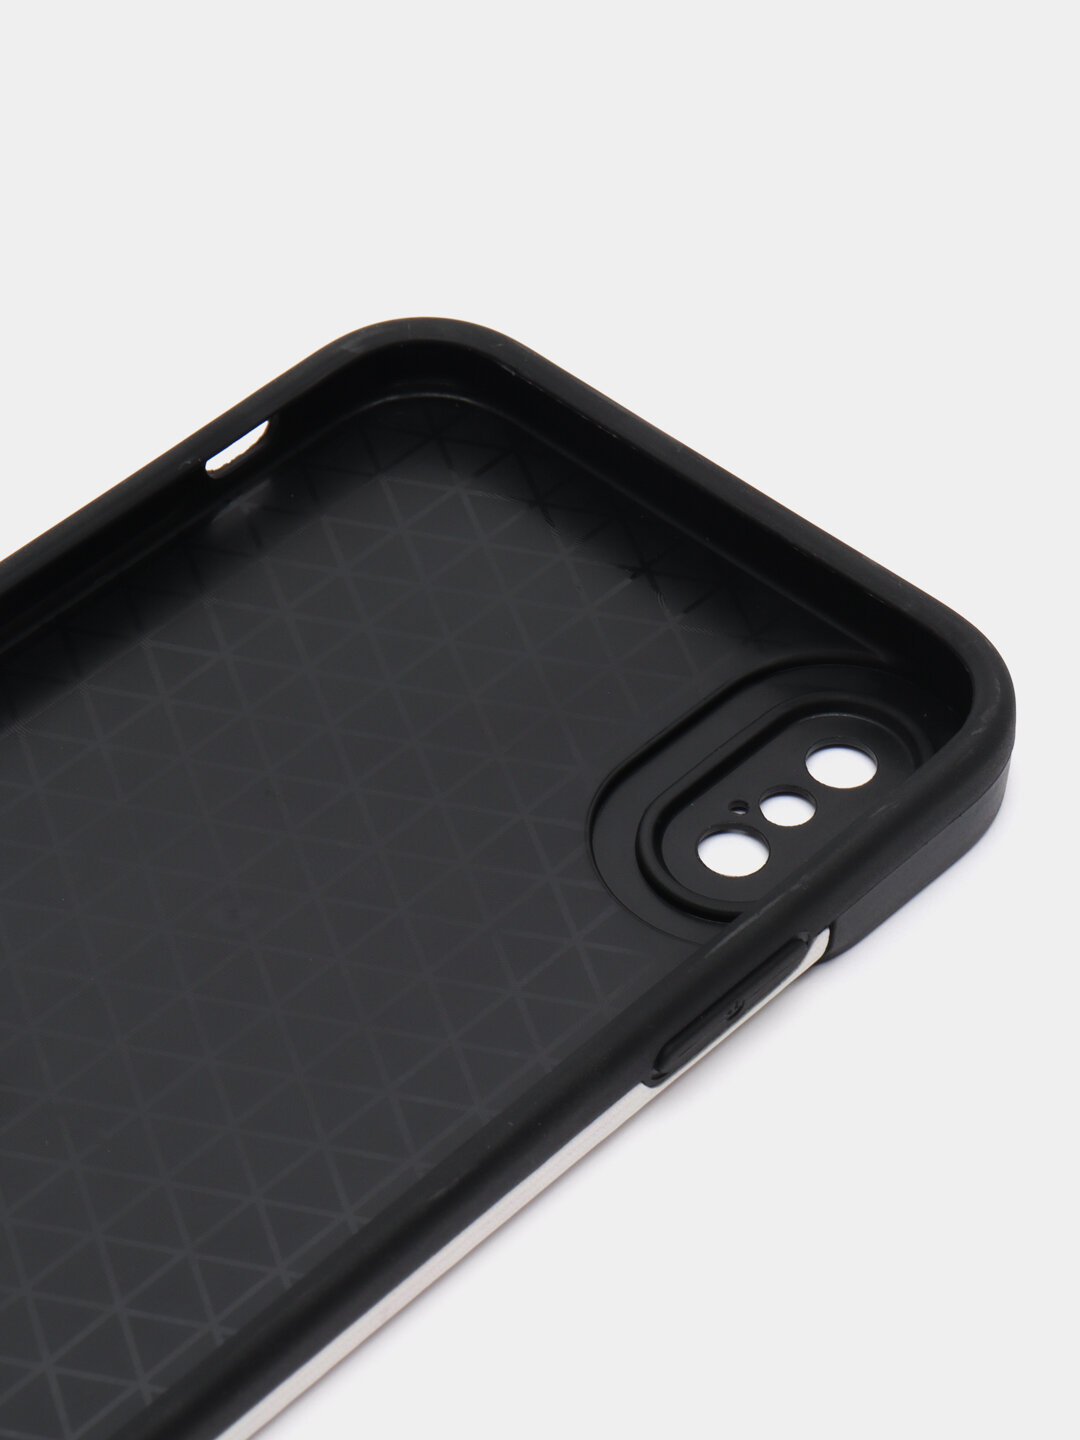 Защитный чехол на айфон 12 про макс силиконовый противоударный бампер для Apple с защитой камеры, чехол на iphone 12 Pro Max, черный/белый